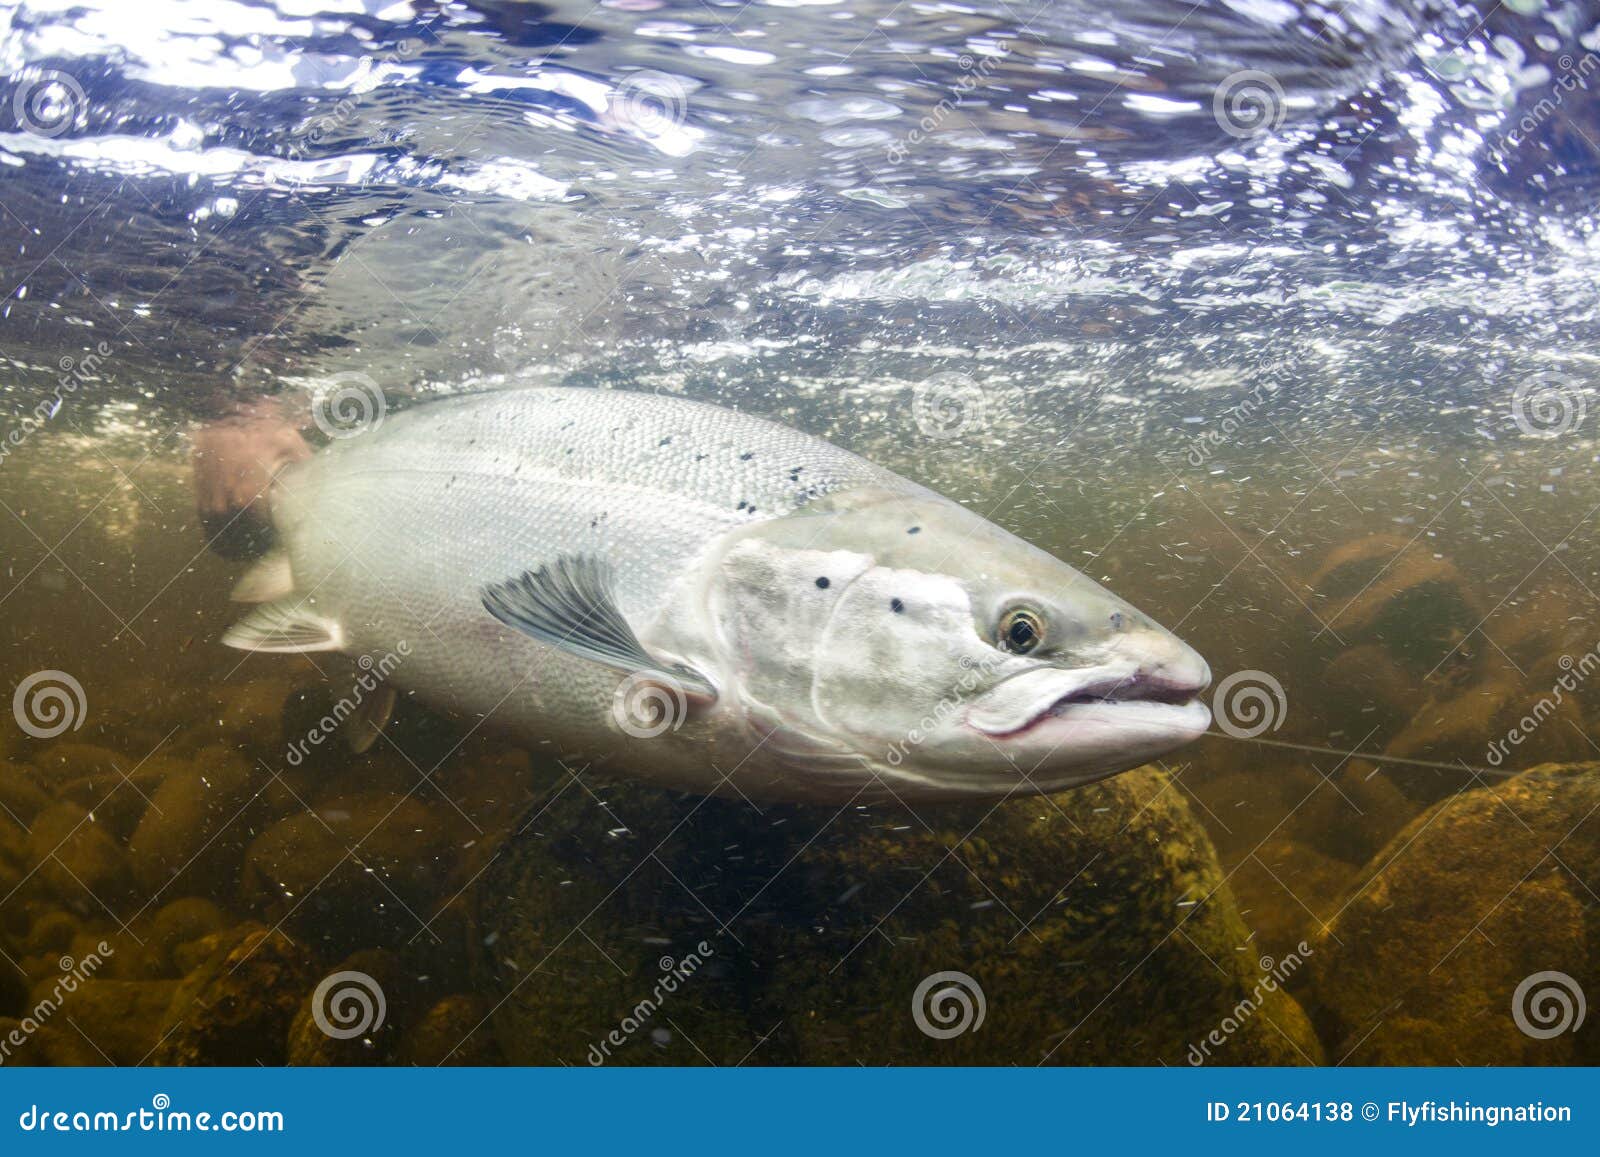 wild atlantic salmon underwater